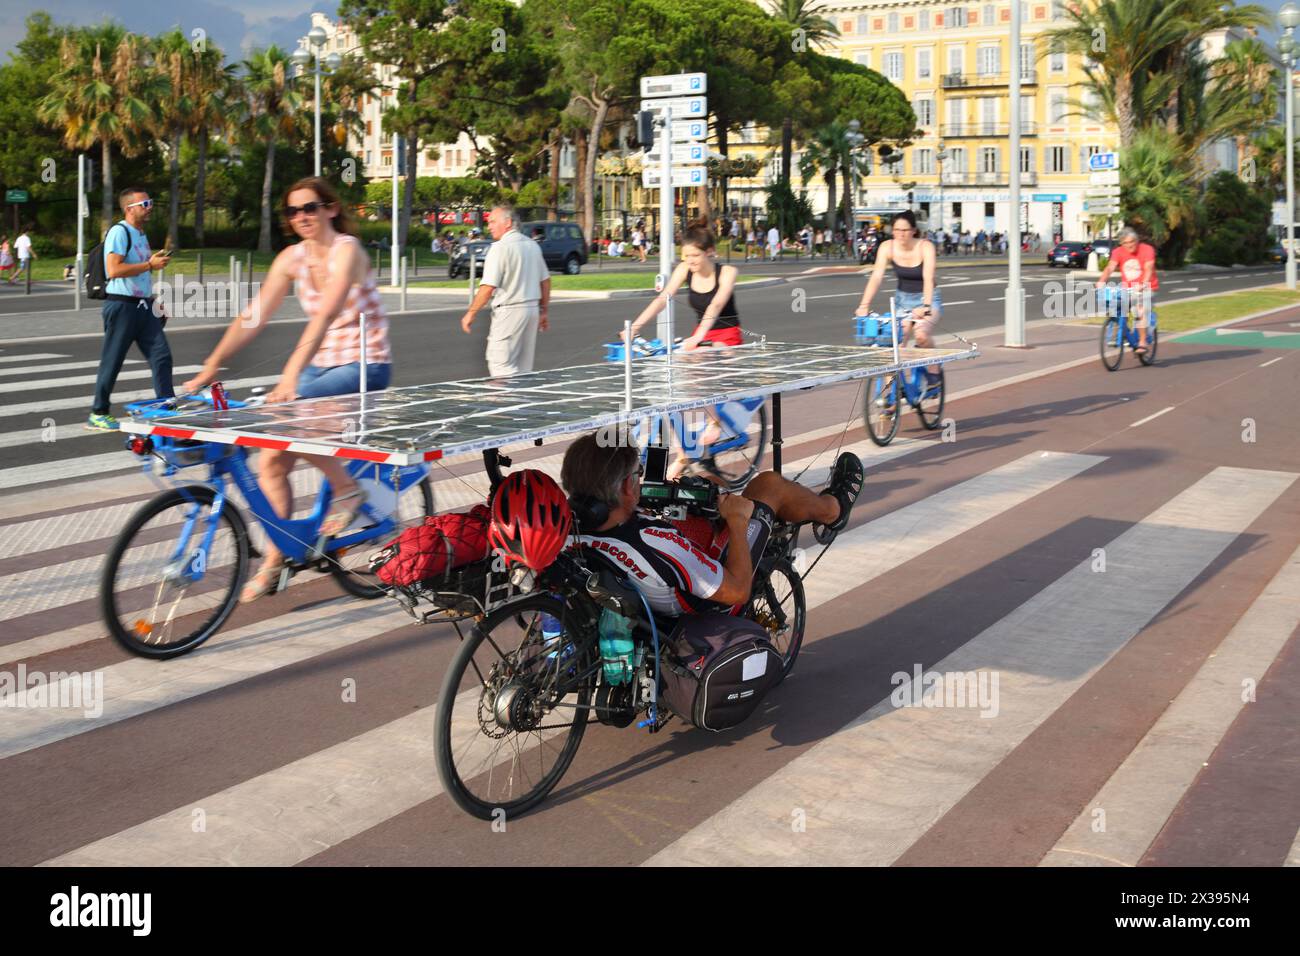 NIZZA, FRANKREICH - 24. JUL 2016: Man Radfahrer bewegt sich mit Solarbatterie, das ist eine modische umweltfreundliche Erfindung Stockfoto